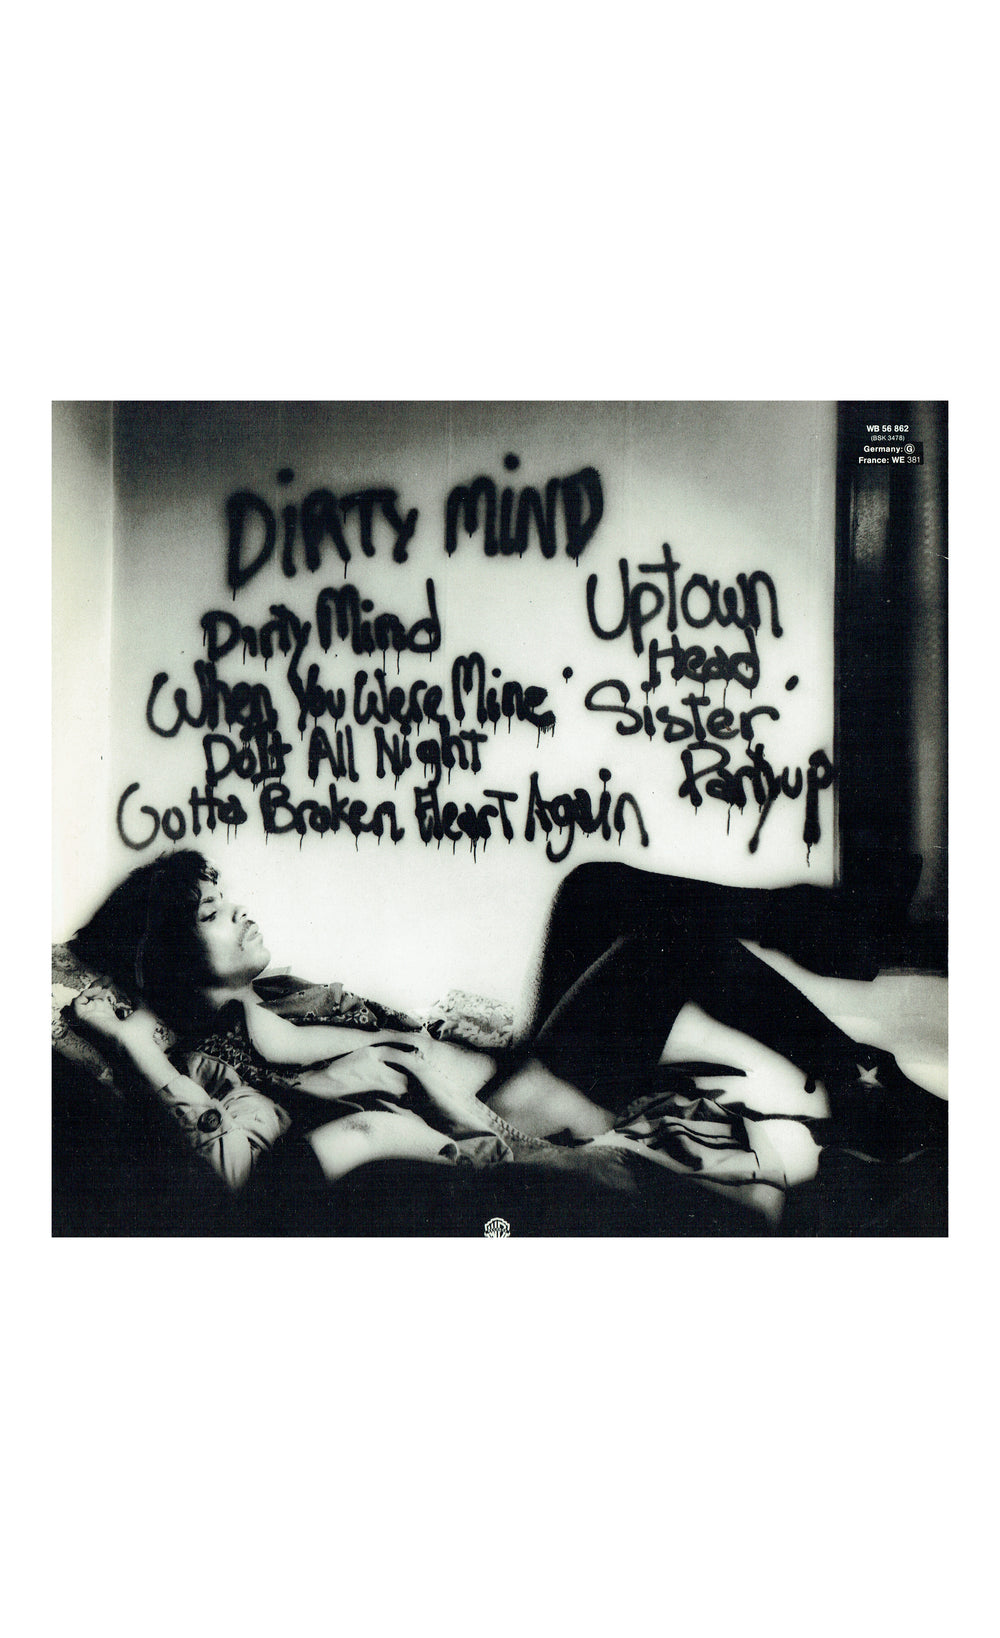 Prince – Dirty Mind Vinyl Album EU Preloved: 1984